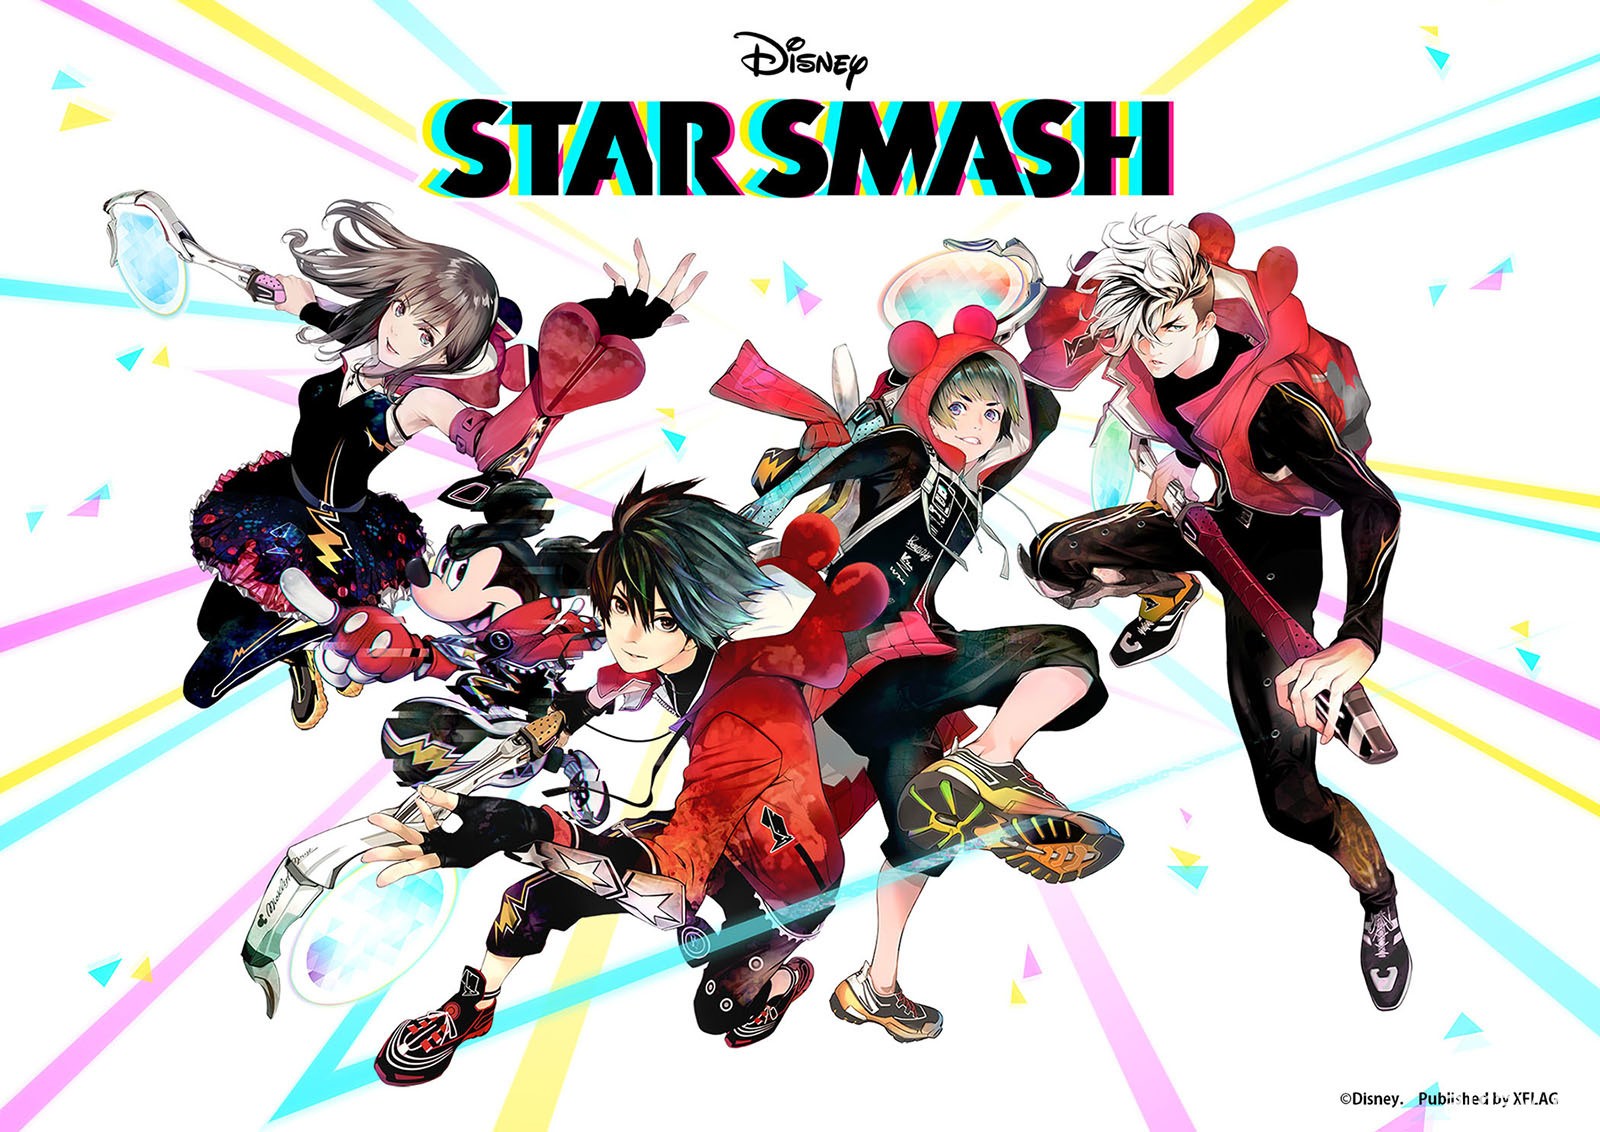 《怪物弹珠》mixi x 日本迪士尼手机新作《STAR SMASH》详情公开 预计 11 月 16 日推出